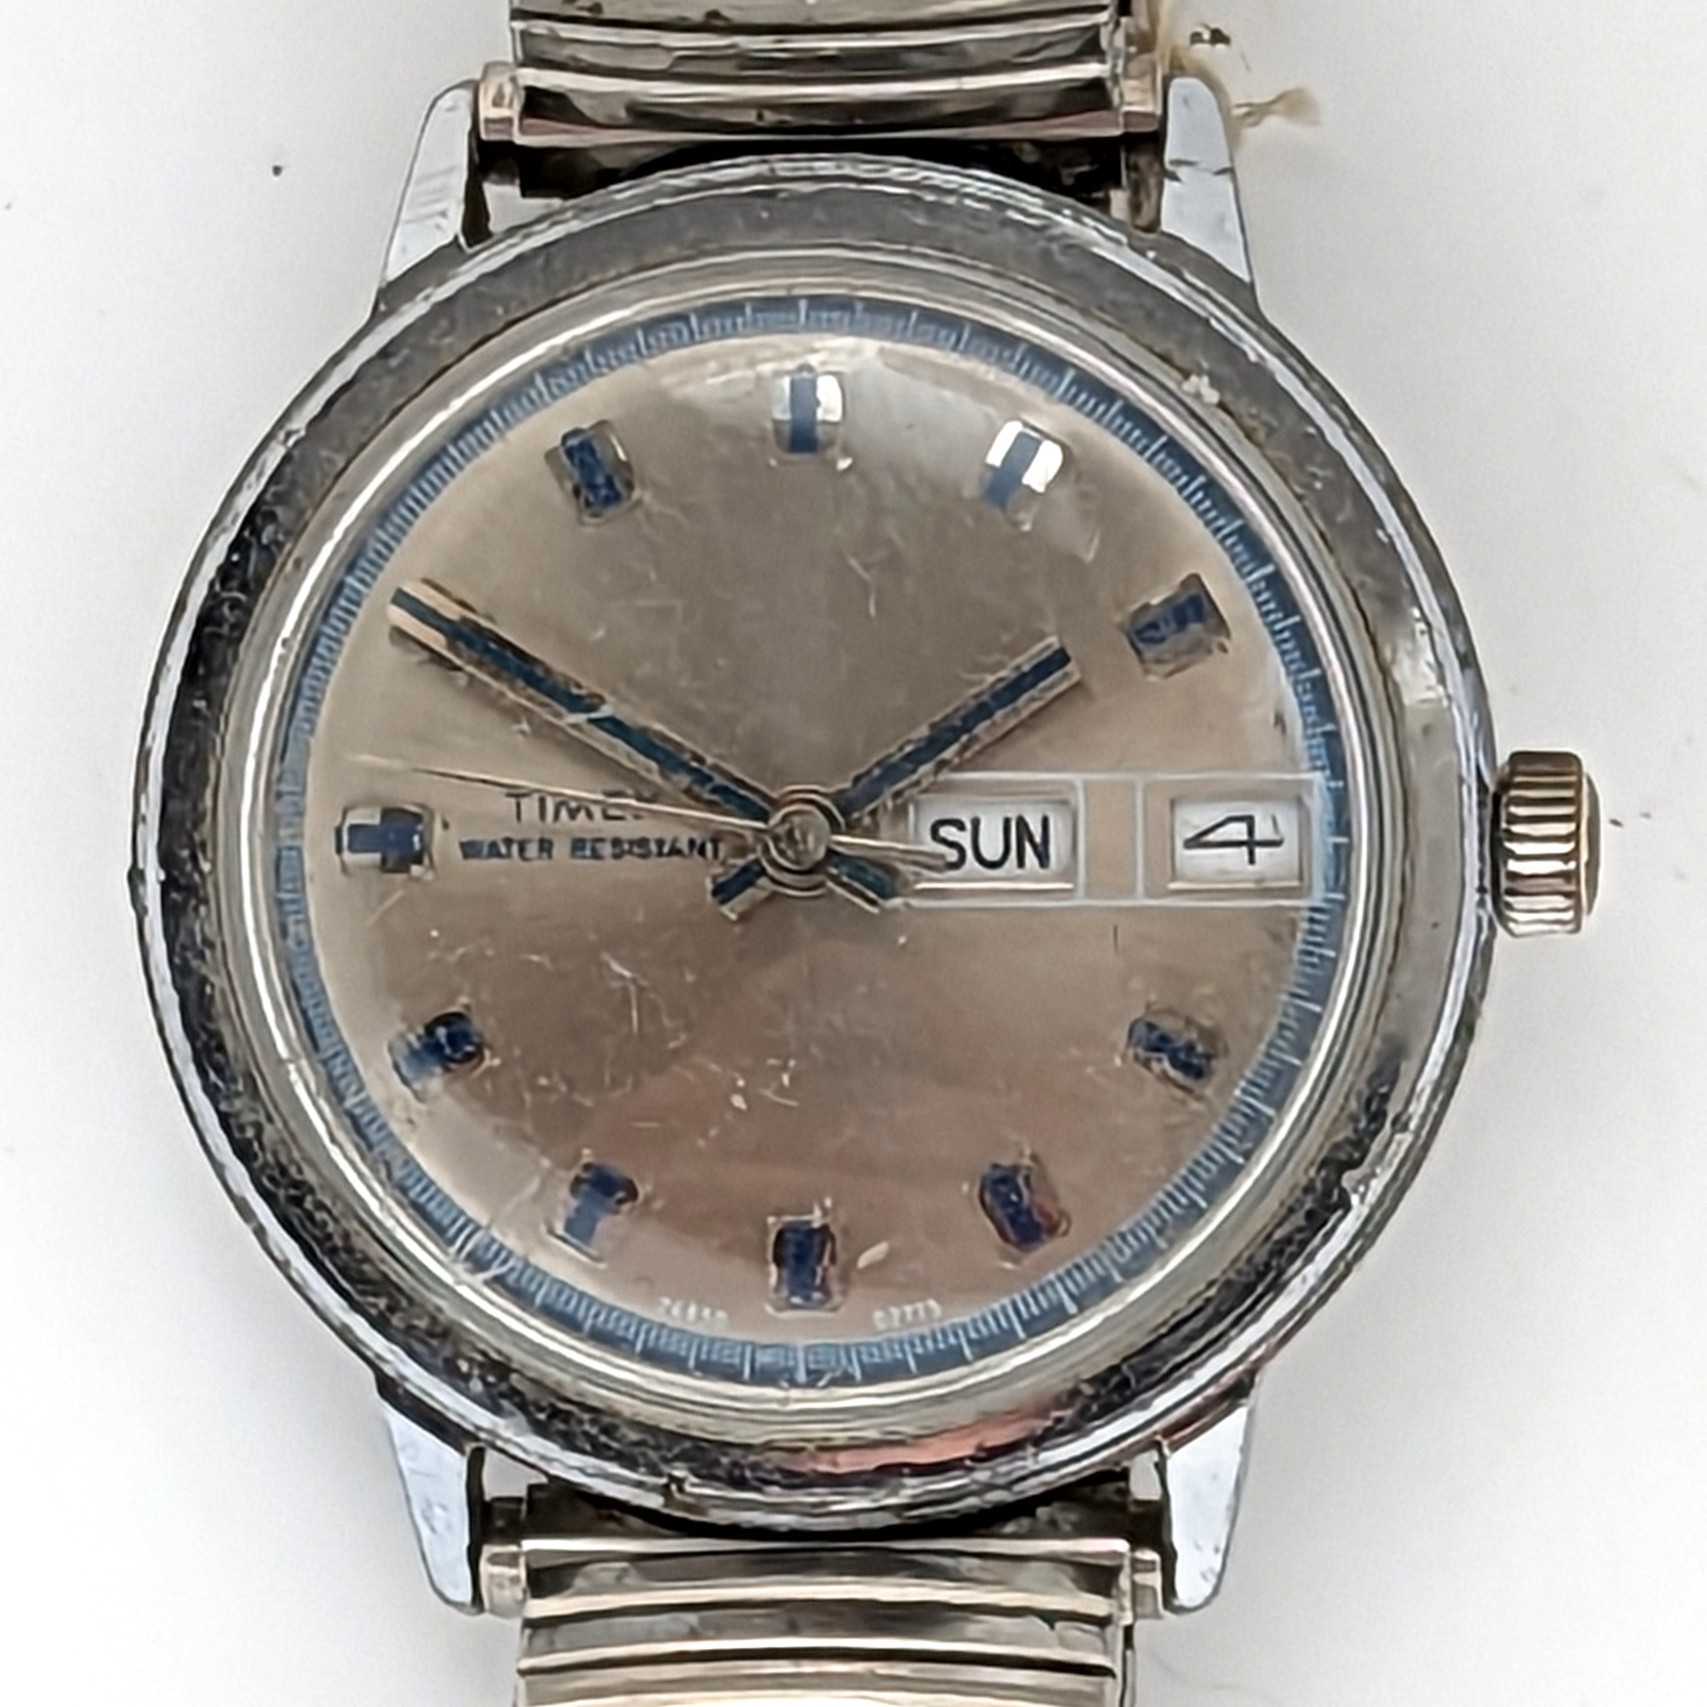 Timex Marlin 26850 02775 [1975]